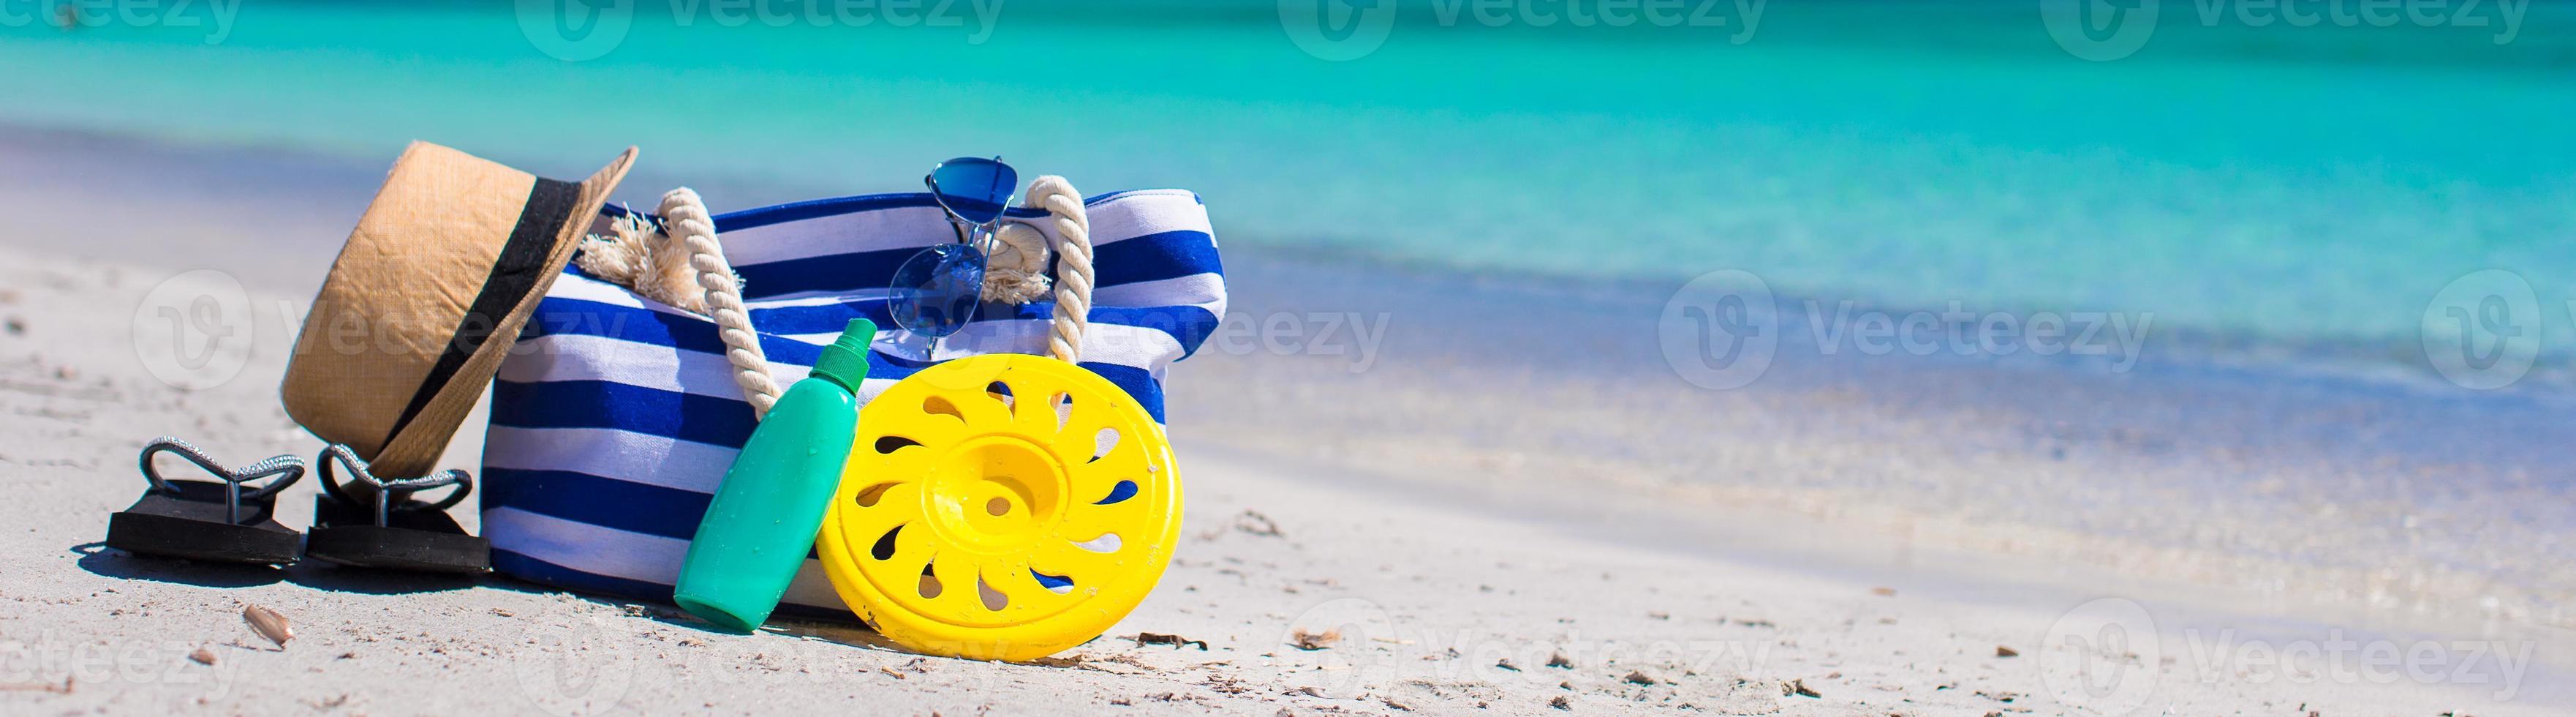 bolsa de rayas, sombrero de paja, bloqueador solar y toalla en la playa foto